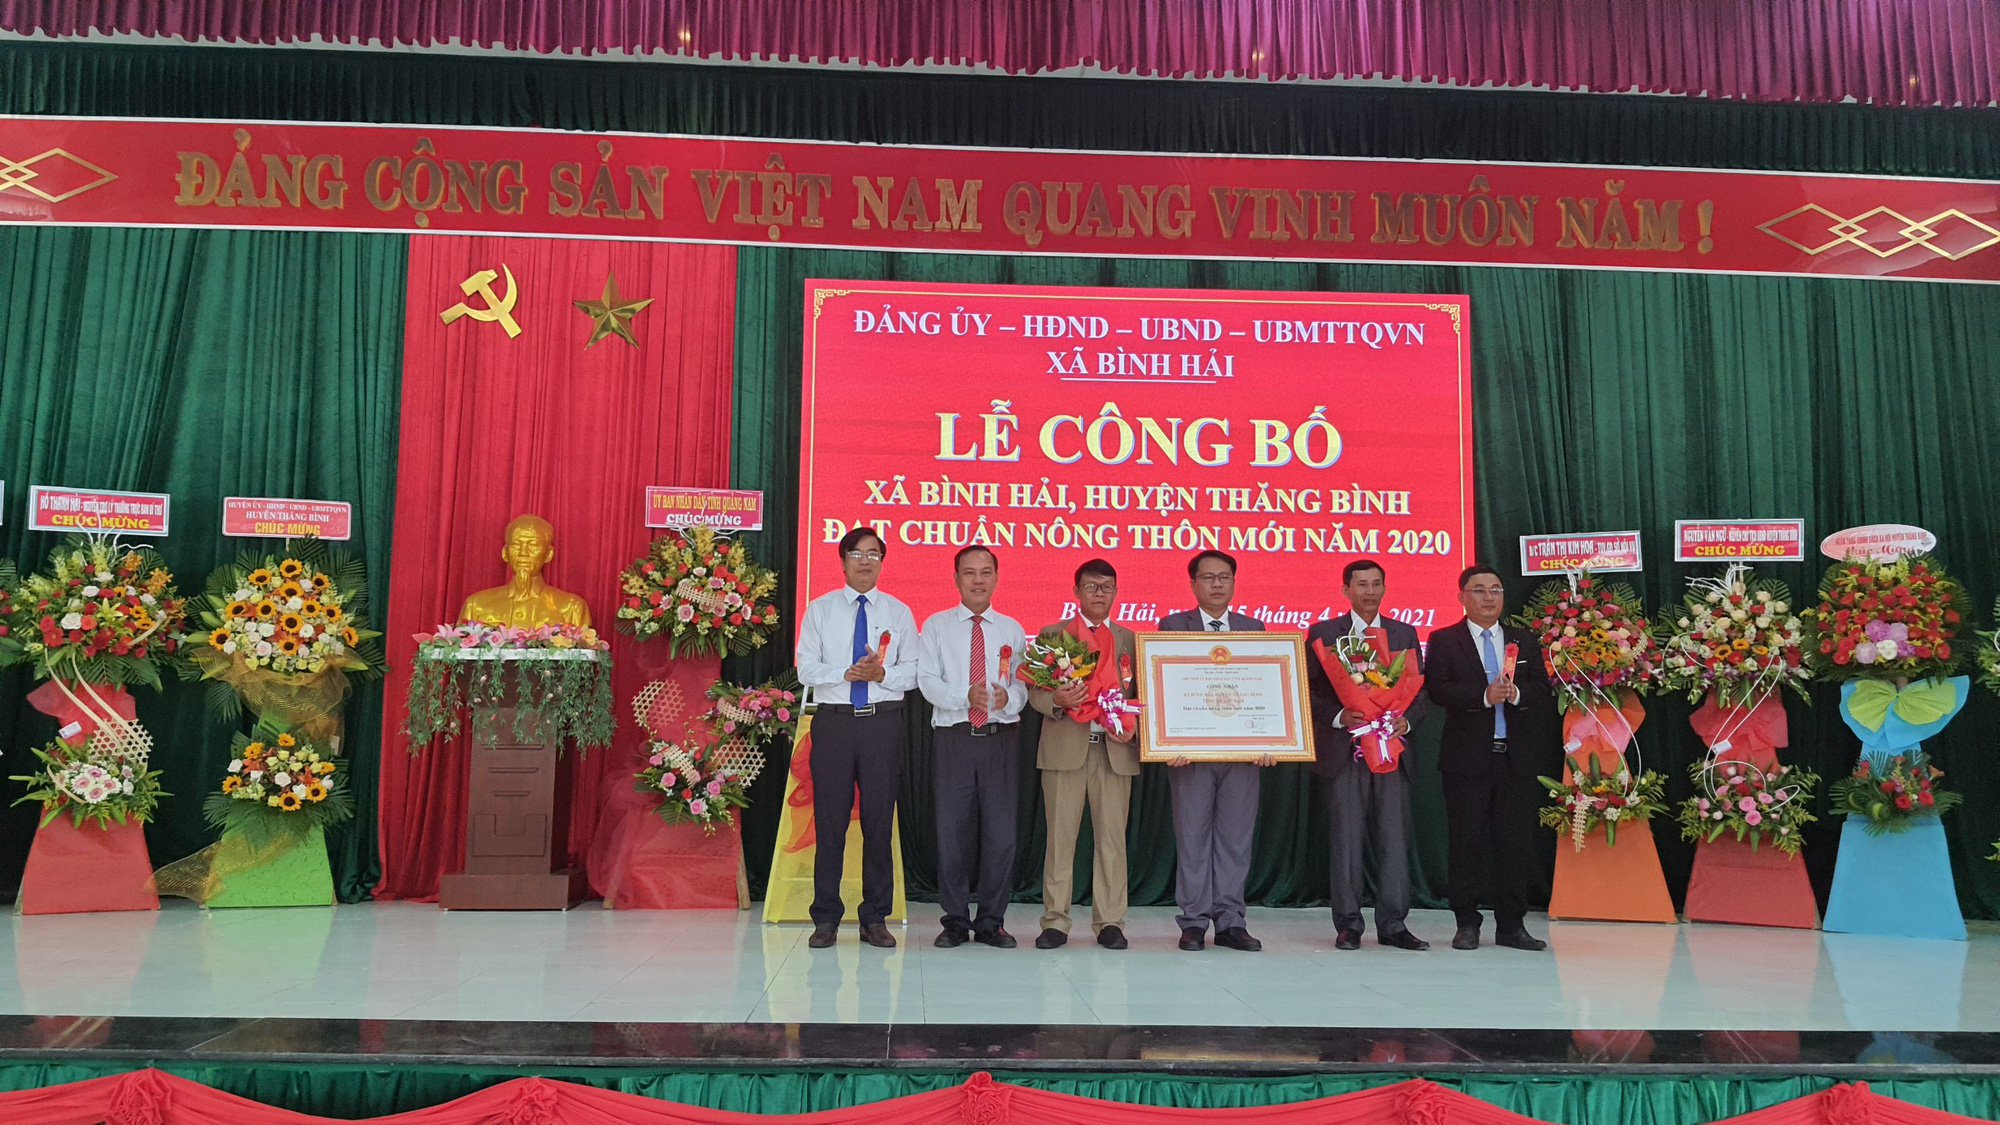 Quảng Nam: Đầu tư hơn 72 tỷ đồng Bình Hải cán đích xã nông thôn mới - Ảnh 1.